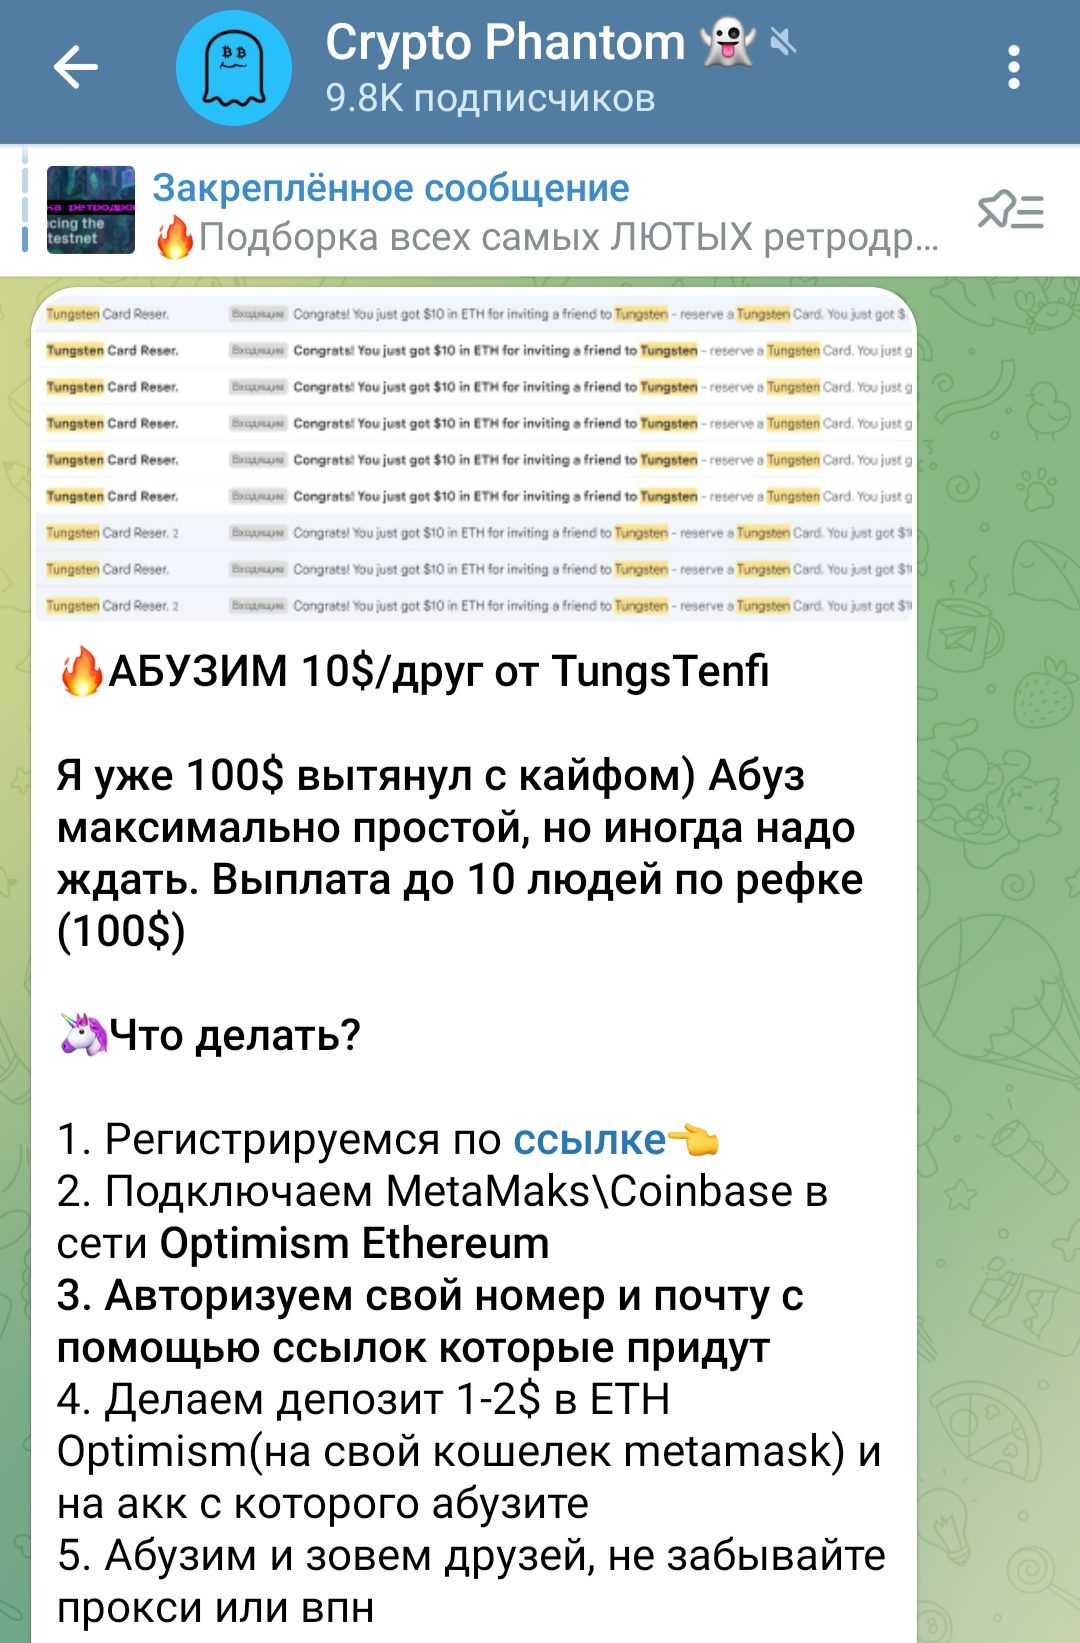 Crypto Phantom телеграмм